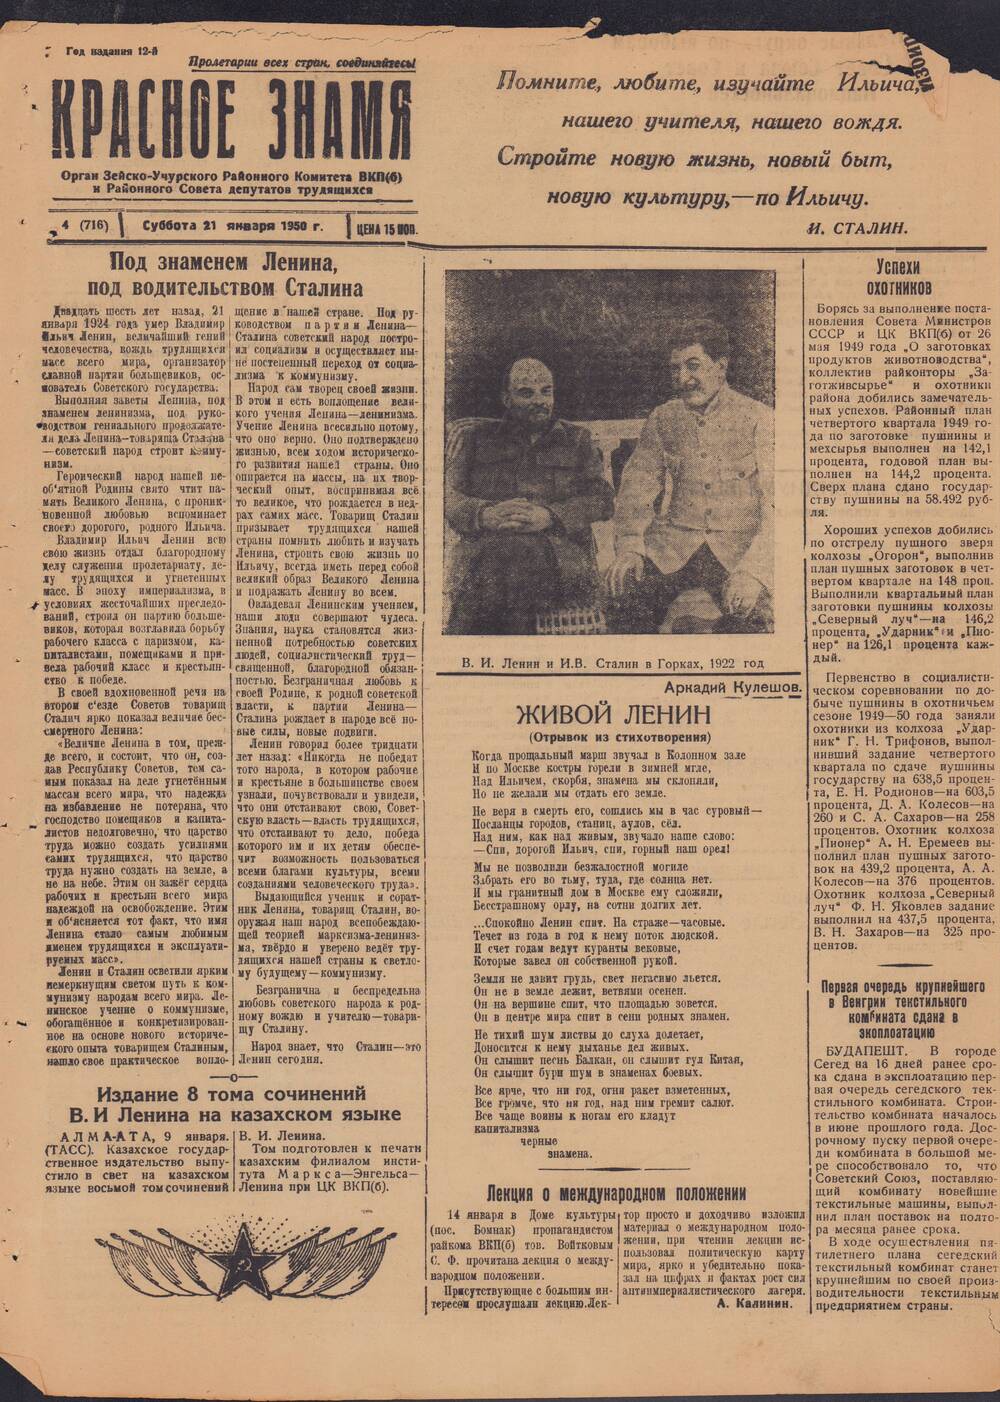 Газета Красное знамя №4 (716) от21 января 1950 года